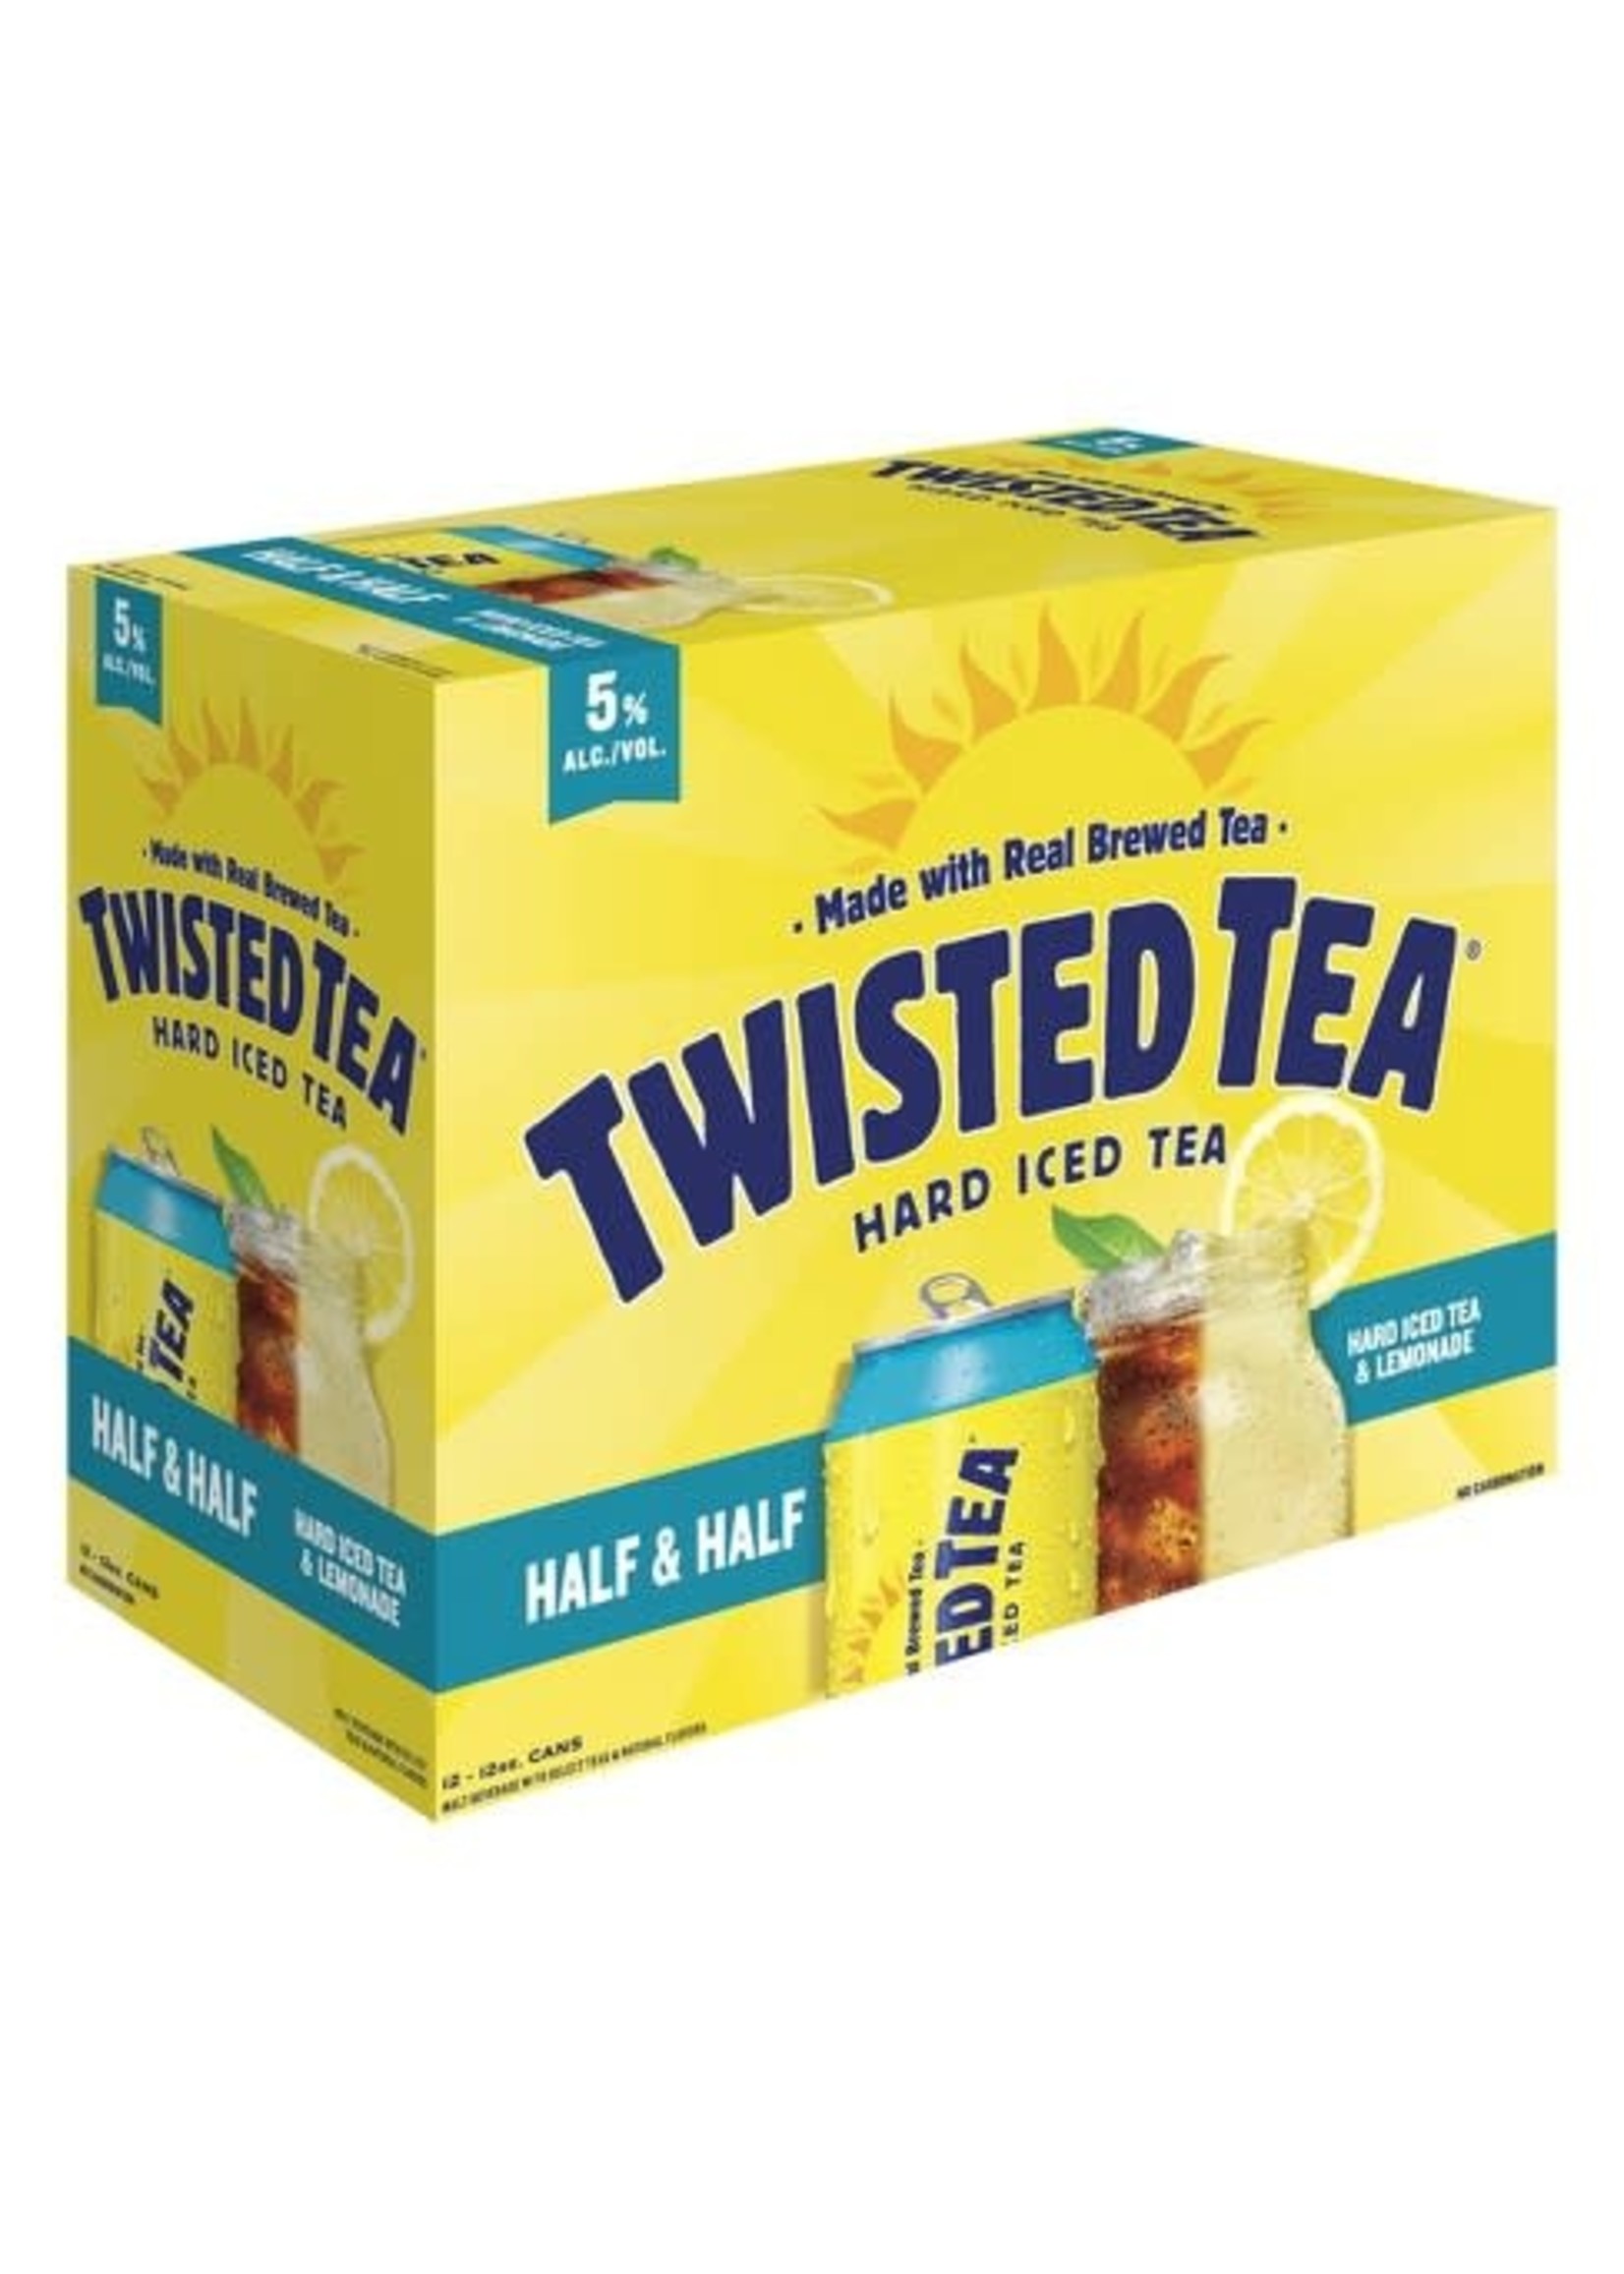 TWISTED TEA TWISTED TEA	HALF & HALF 12PK	12 OZ